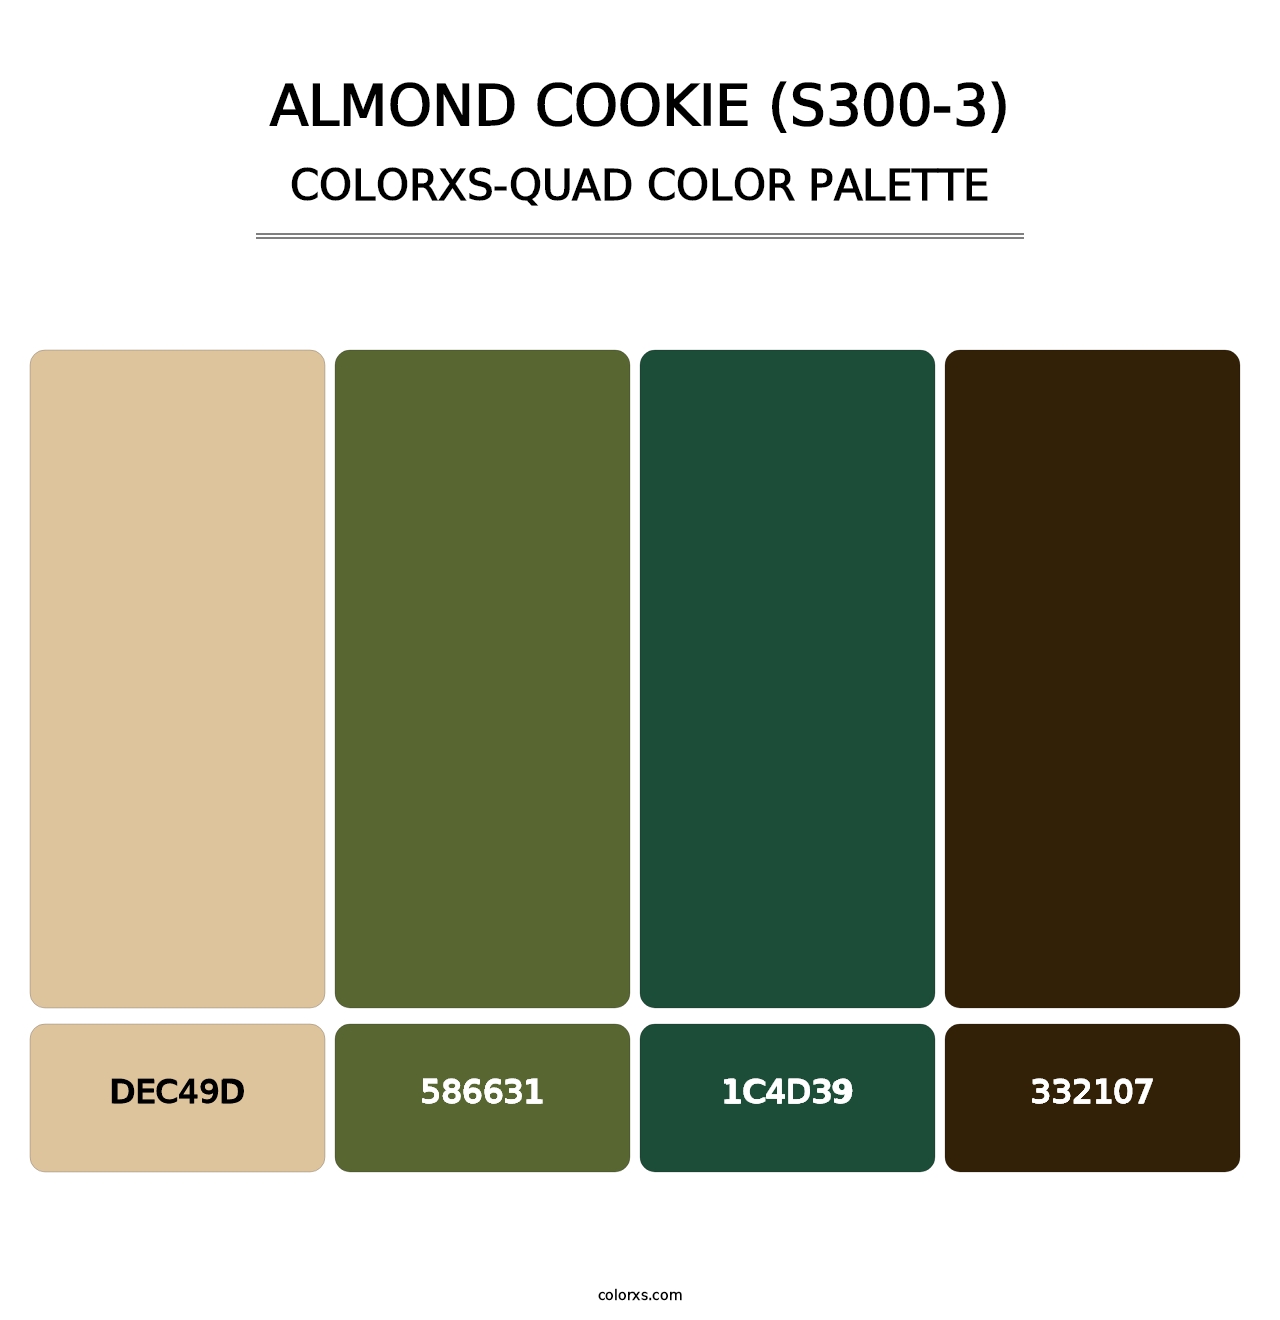 Almond Cookie (S300-3) - Colorxs Quad Palette